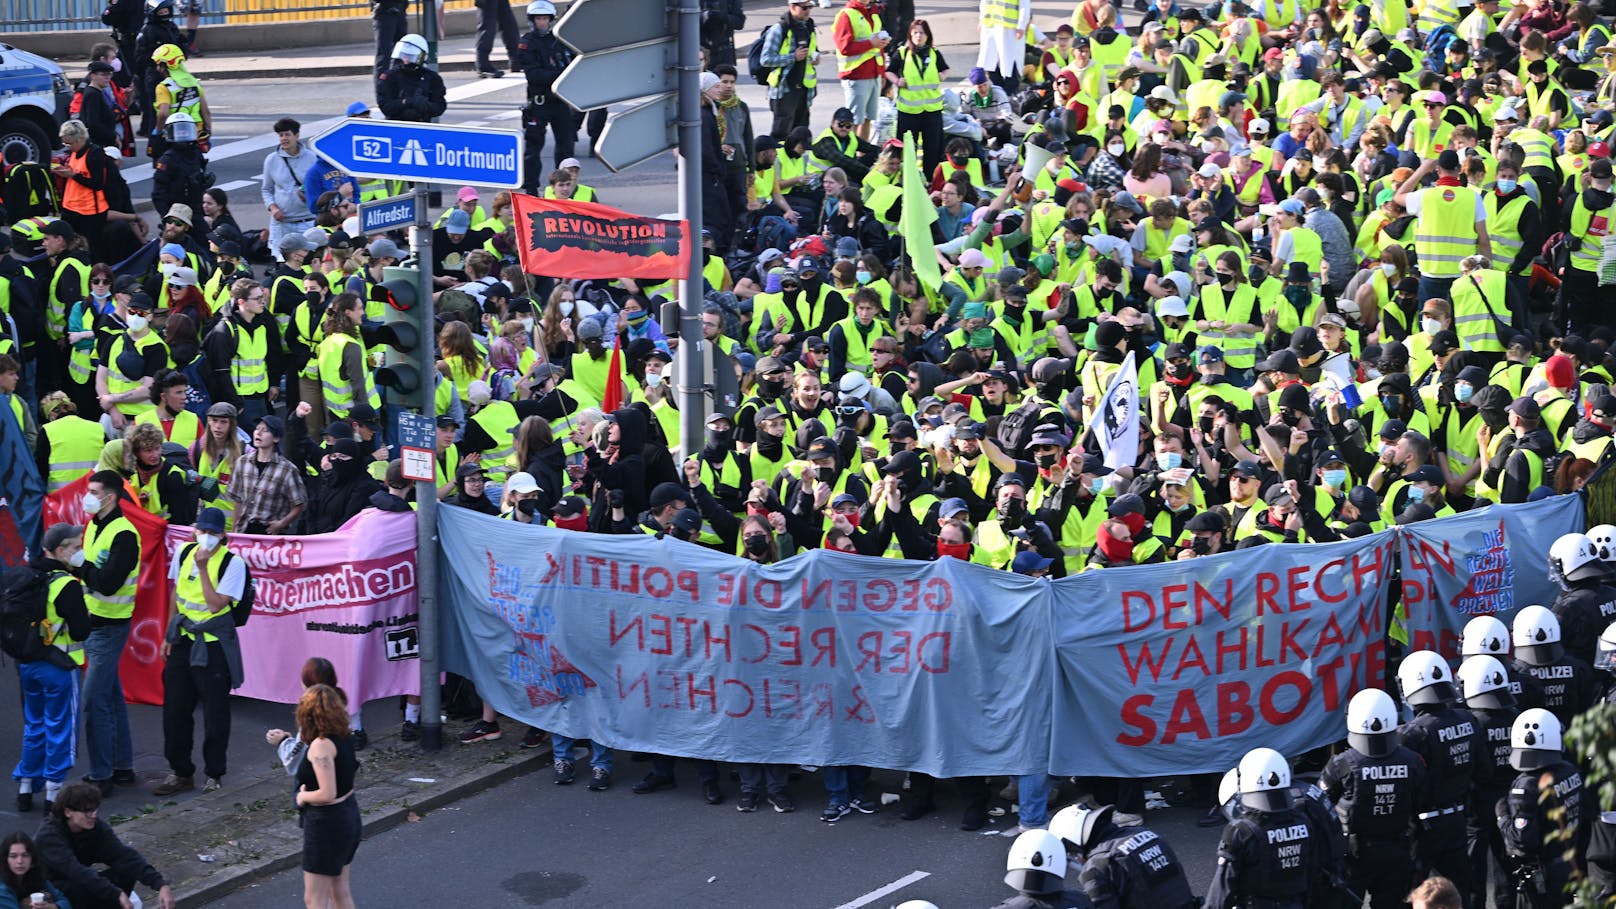 Am Samstagmorgen kam es im deutschen Essen zu einer großen Demonstration gegn den Parteitag der "Alternative für Deutschland" (AfD).